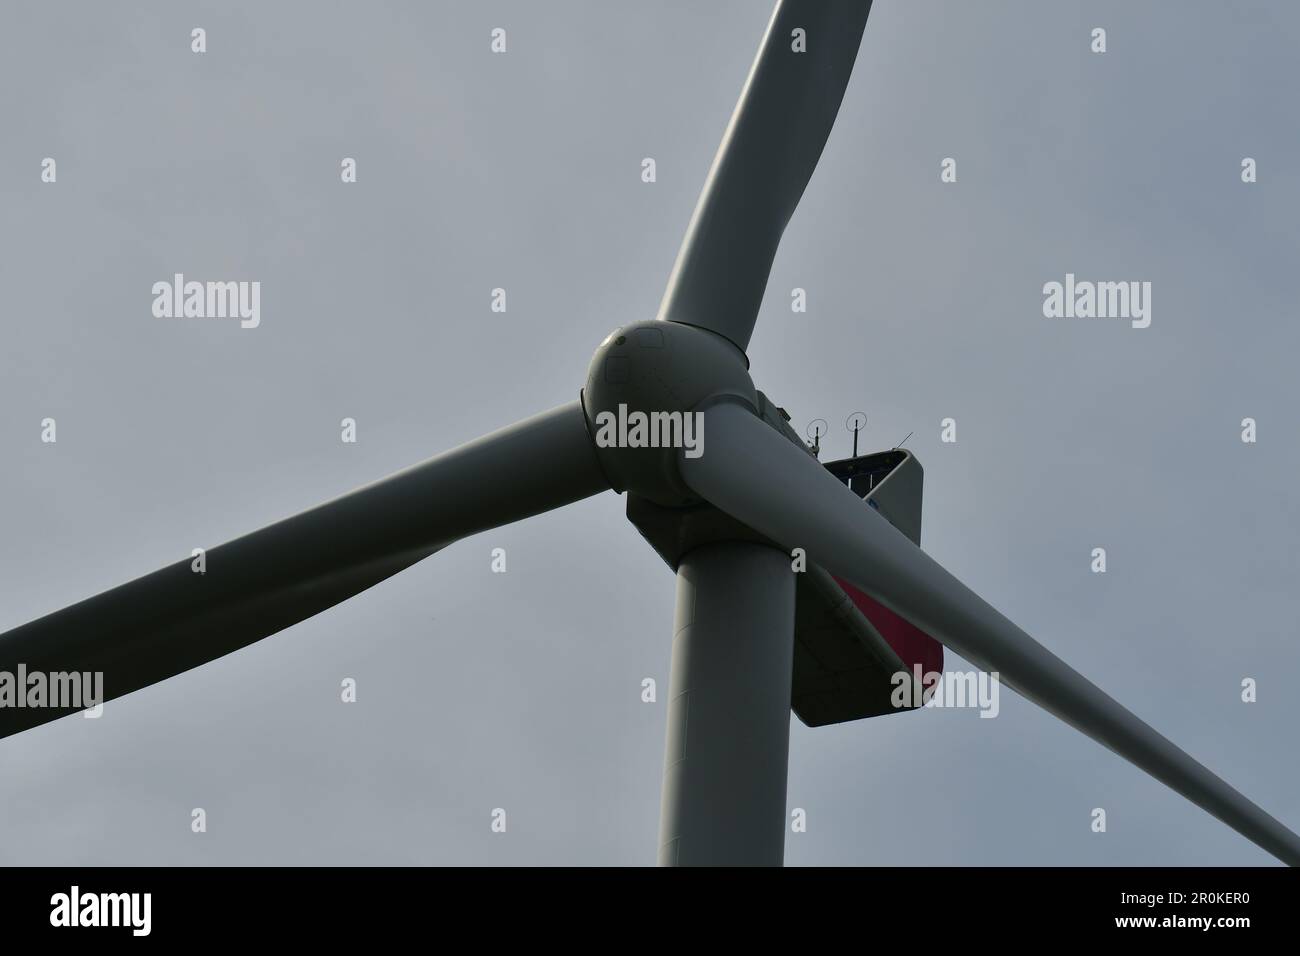 Impianto di energia eolica in dettaglio Foresta tedesca. Foto di alta qualità Foto Stock